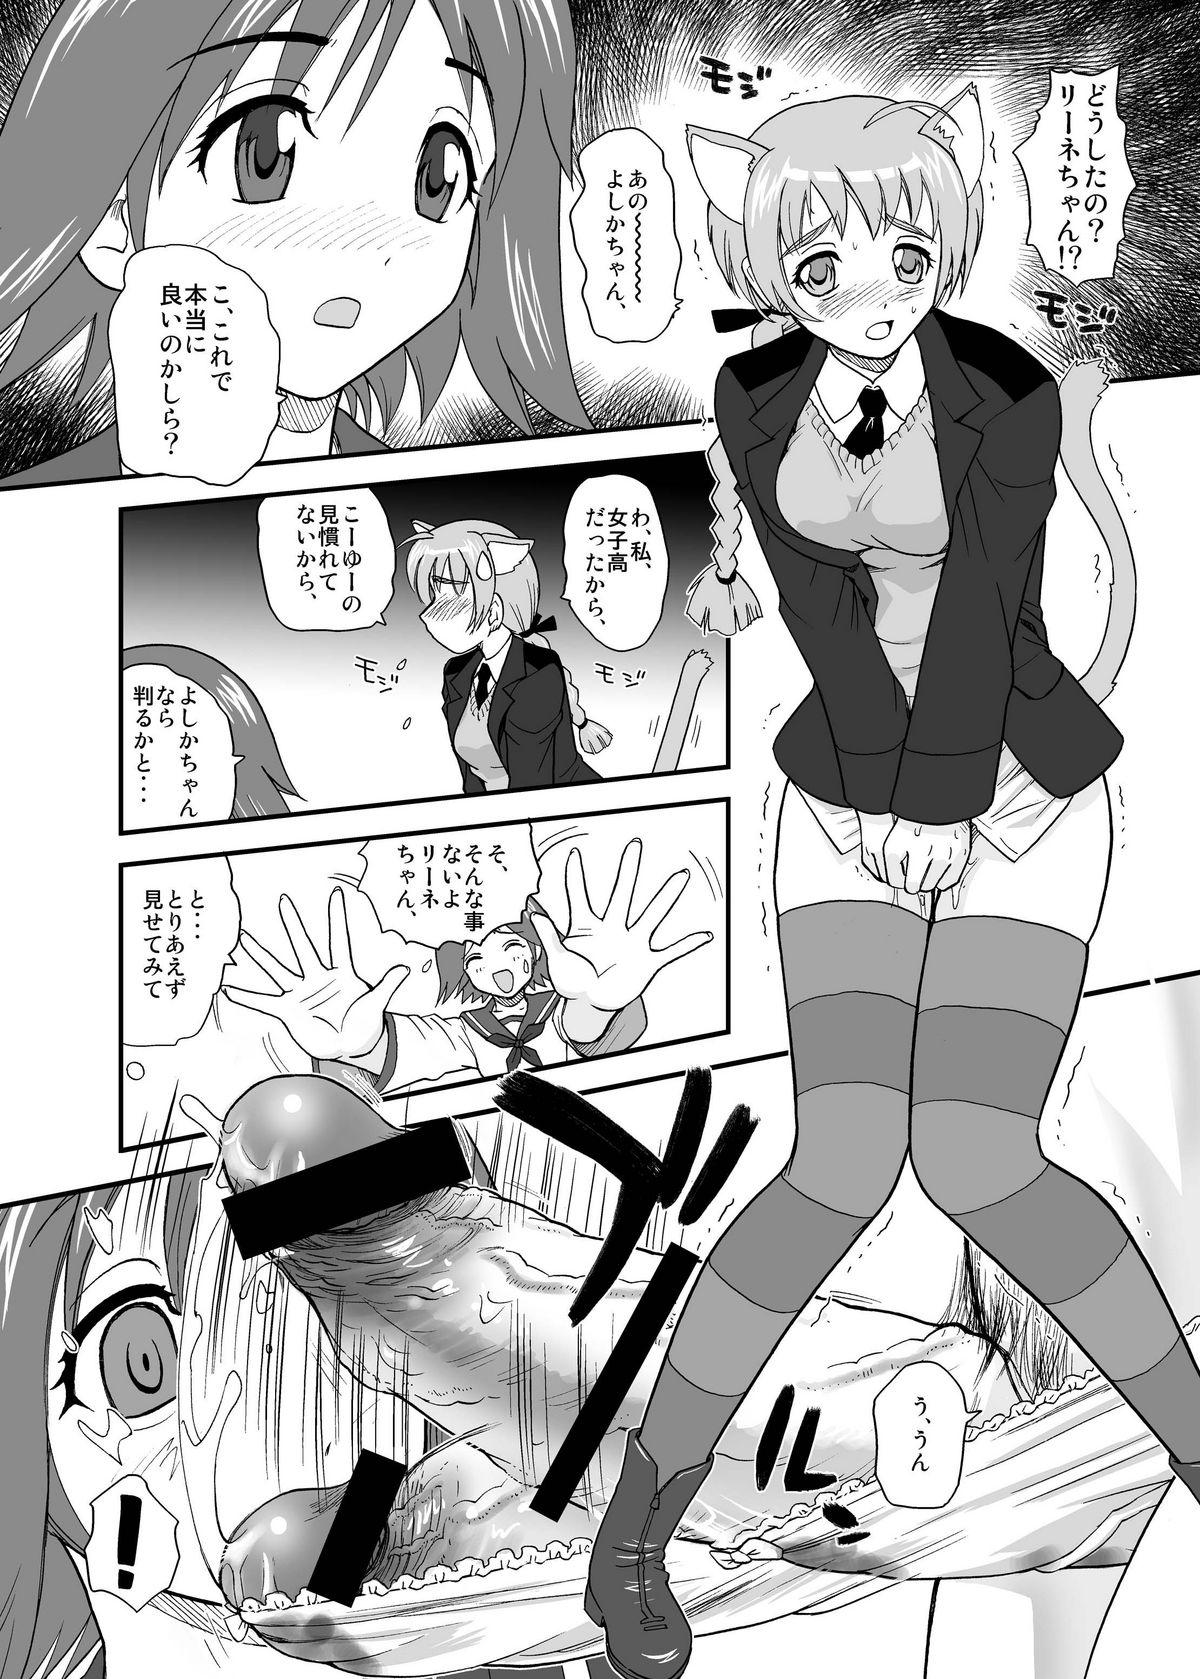 Hardcore Rough Sex Chin ★ ja Naikara Hazukashiku Naimon!!! - Strike witches Gordita - Page 8